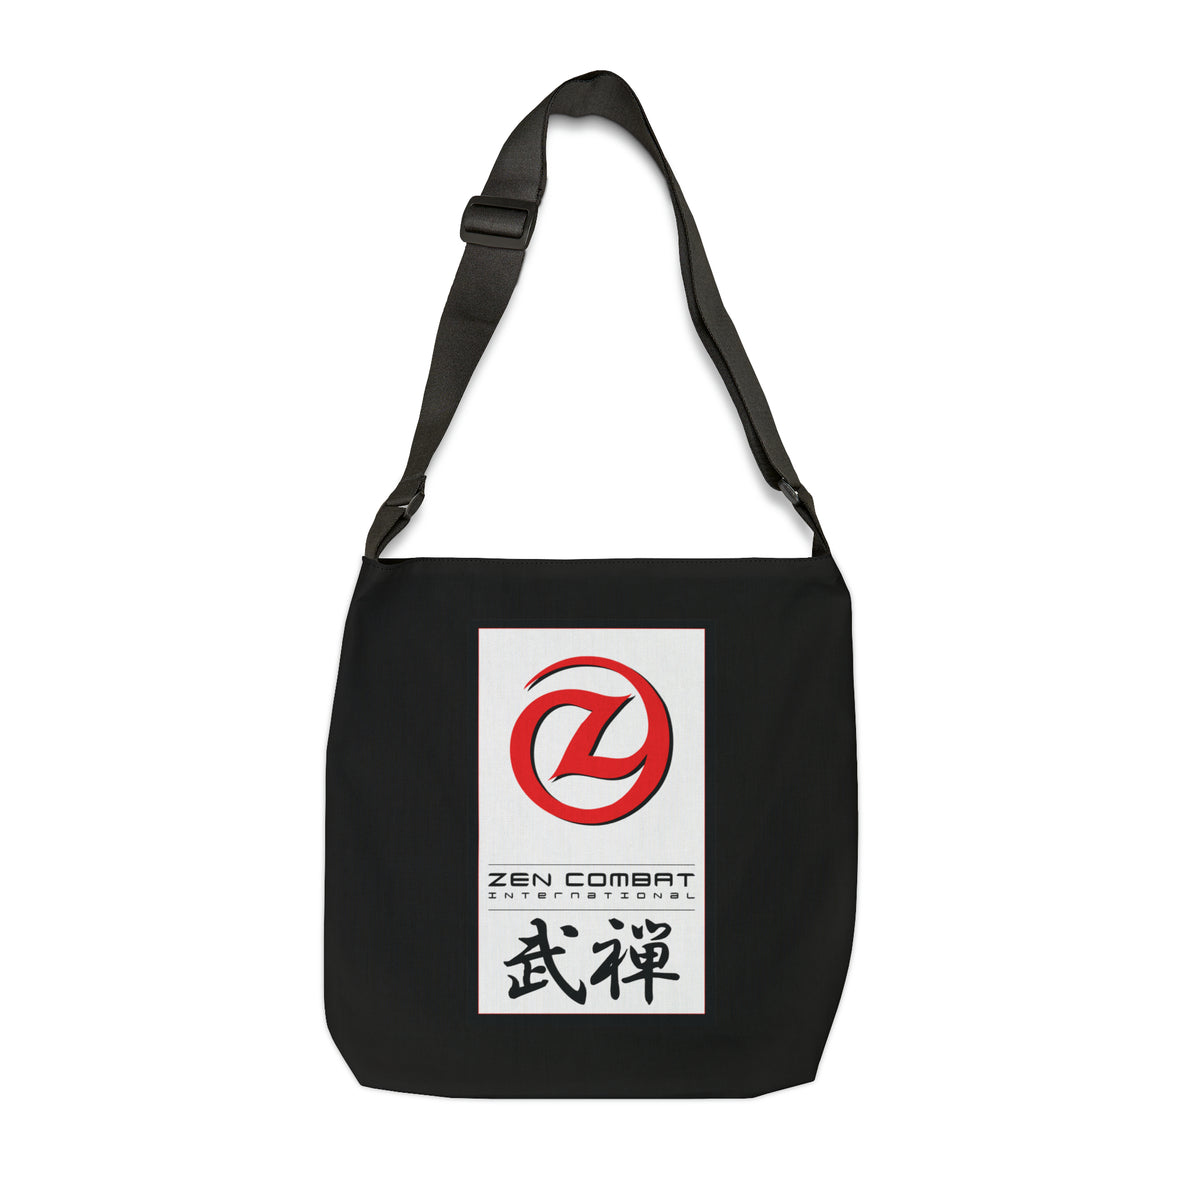 Zen Combat Adjustable Tote Bag - Black